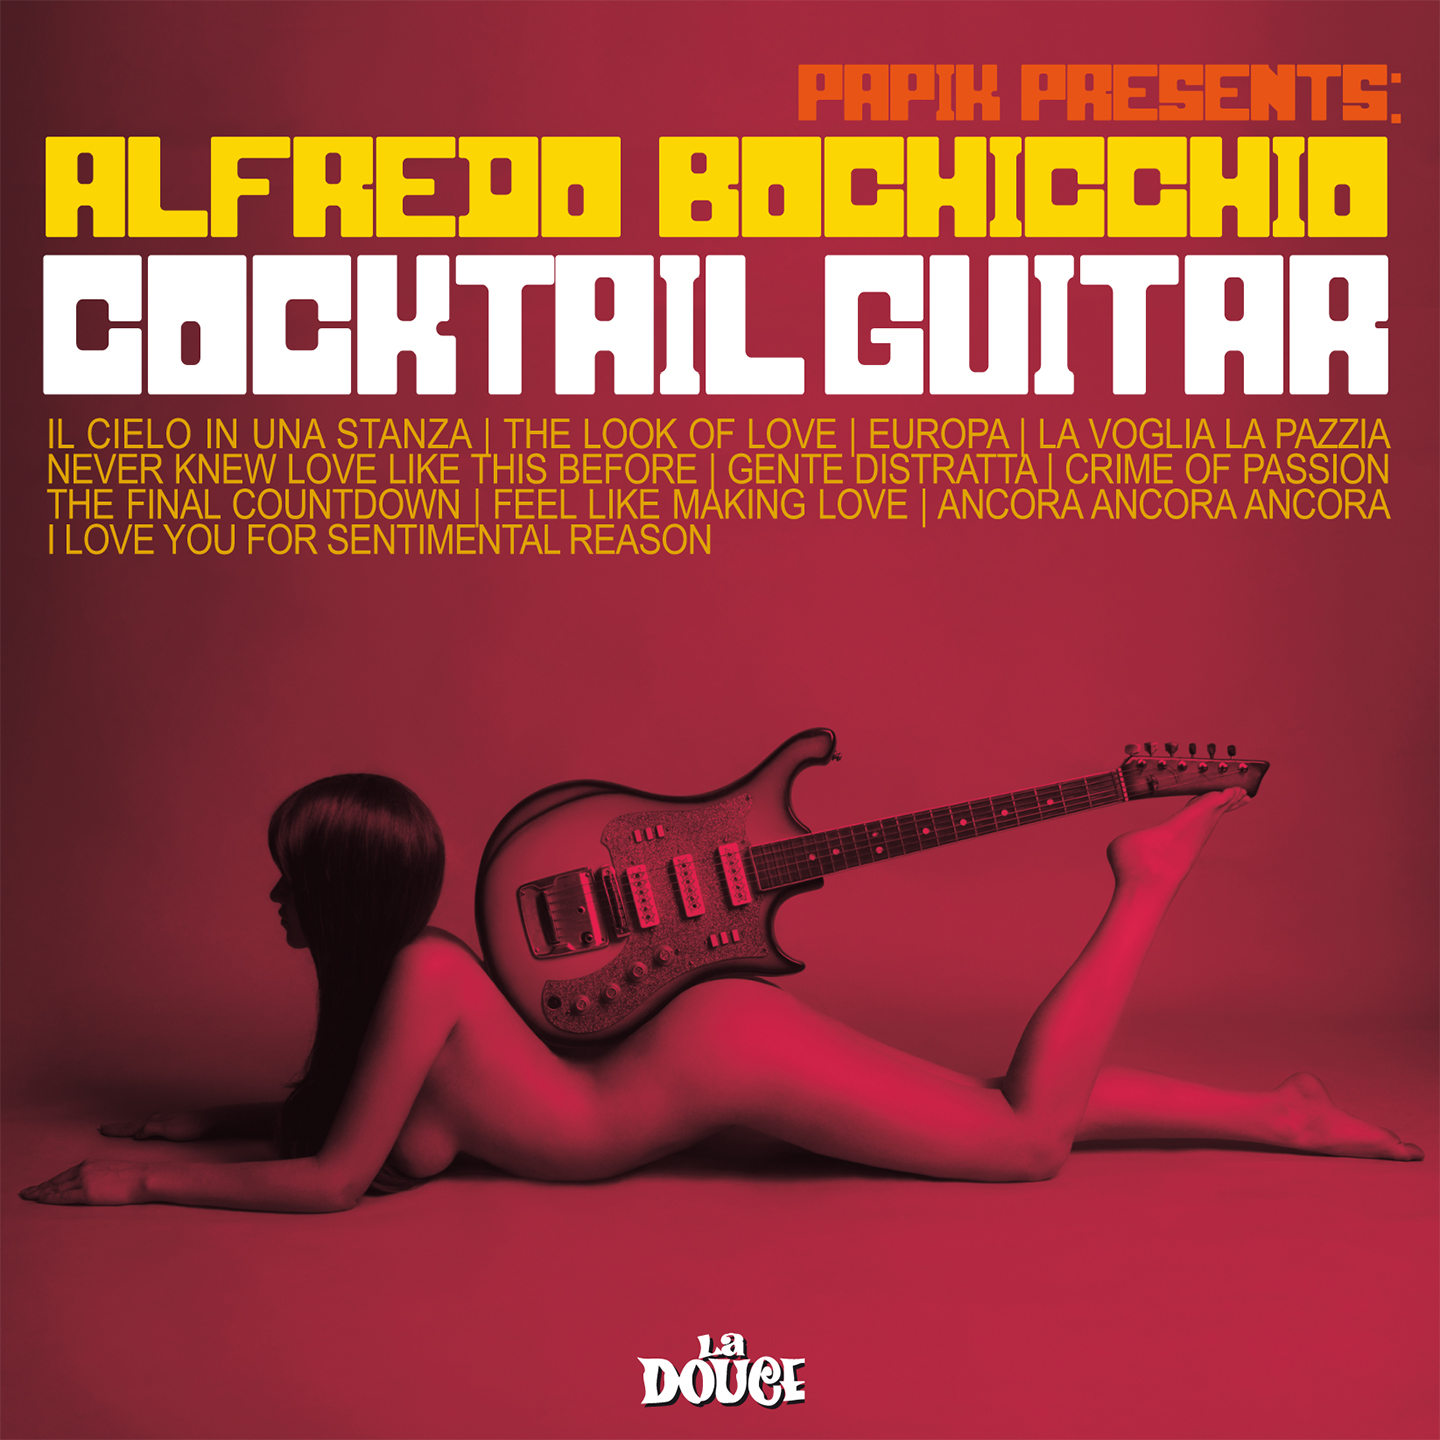 Alfredo Bochicchio "Cocktail Guitar"